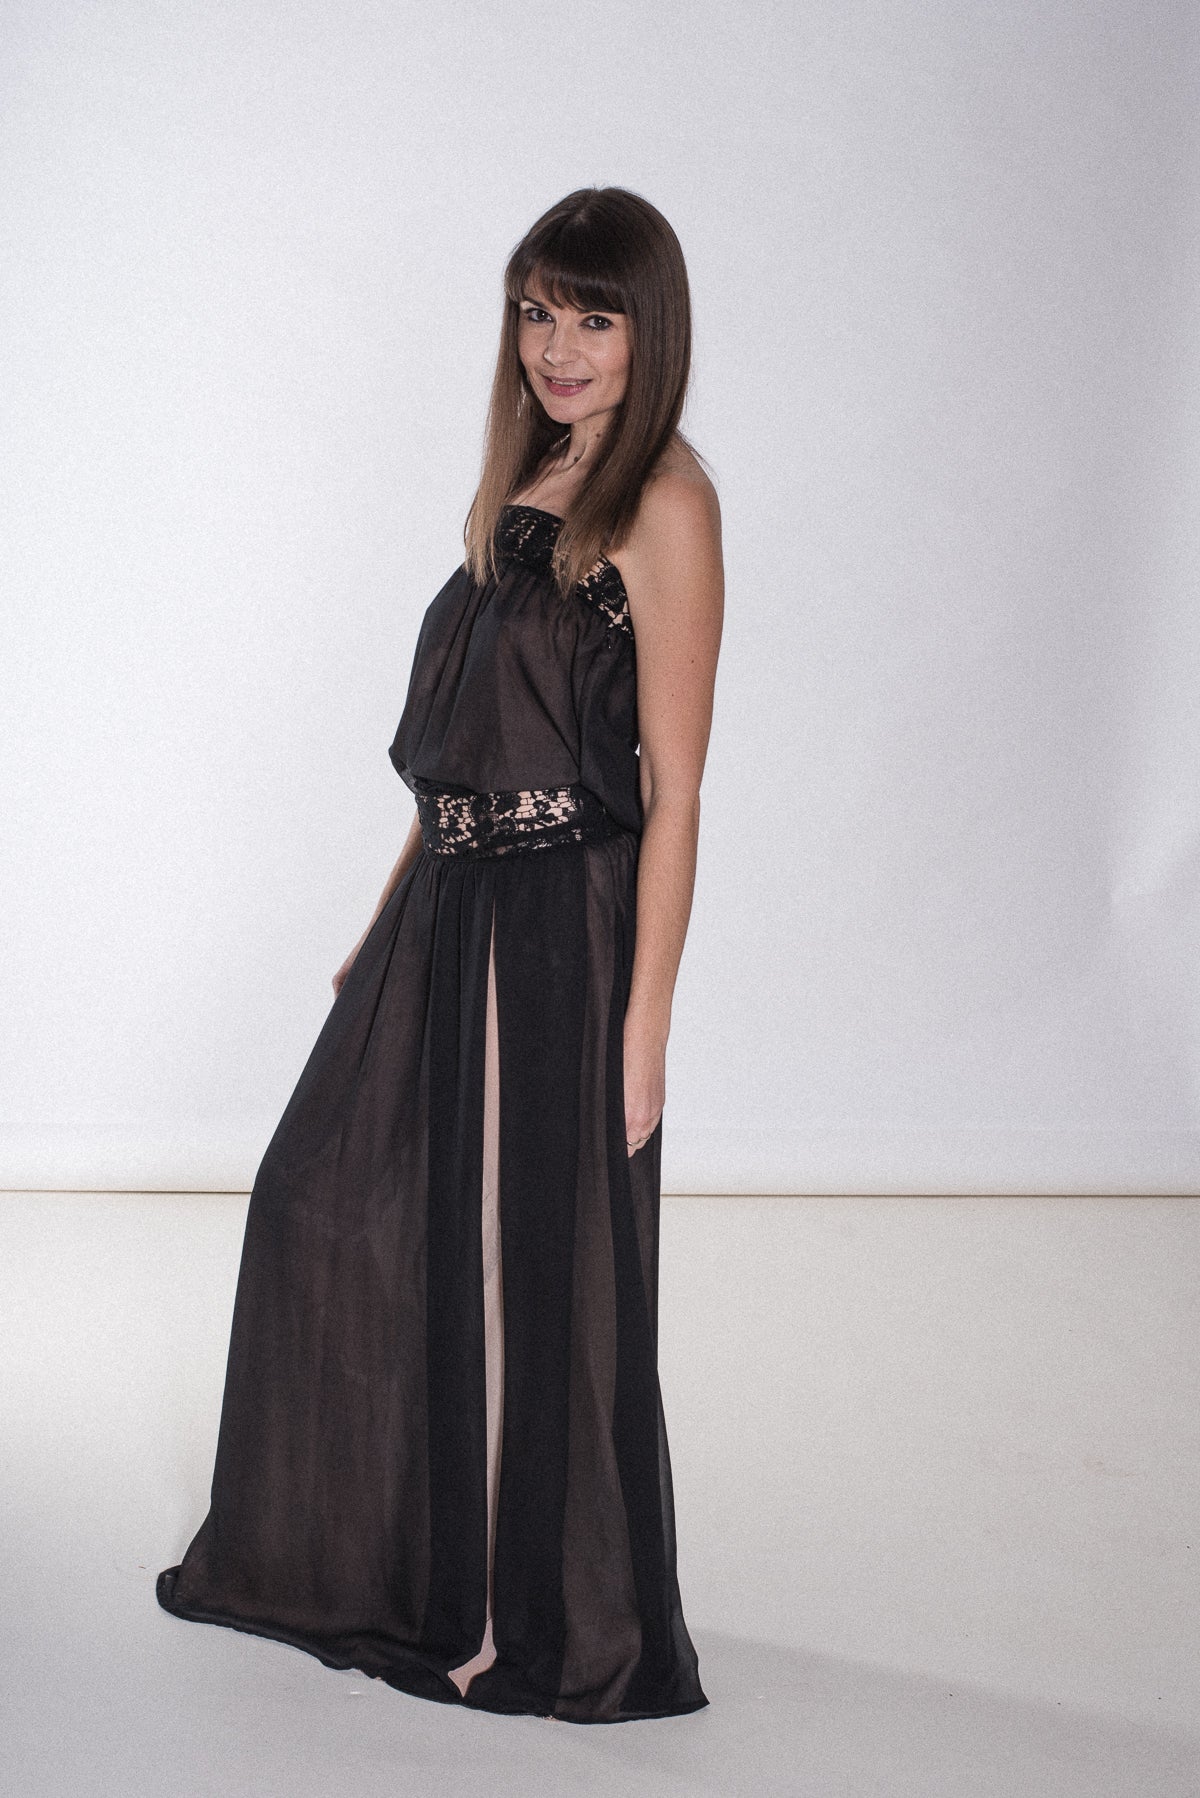 Bandau-Kleid aus Chiffon mit Spitzeneinsätzen, maxi - Kleid - 7dresses